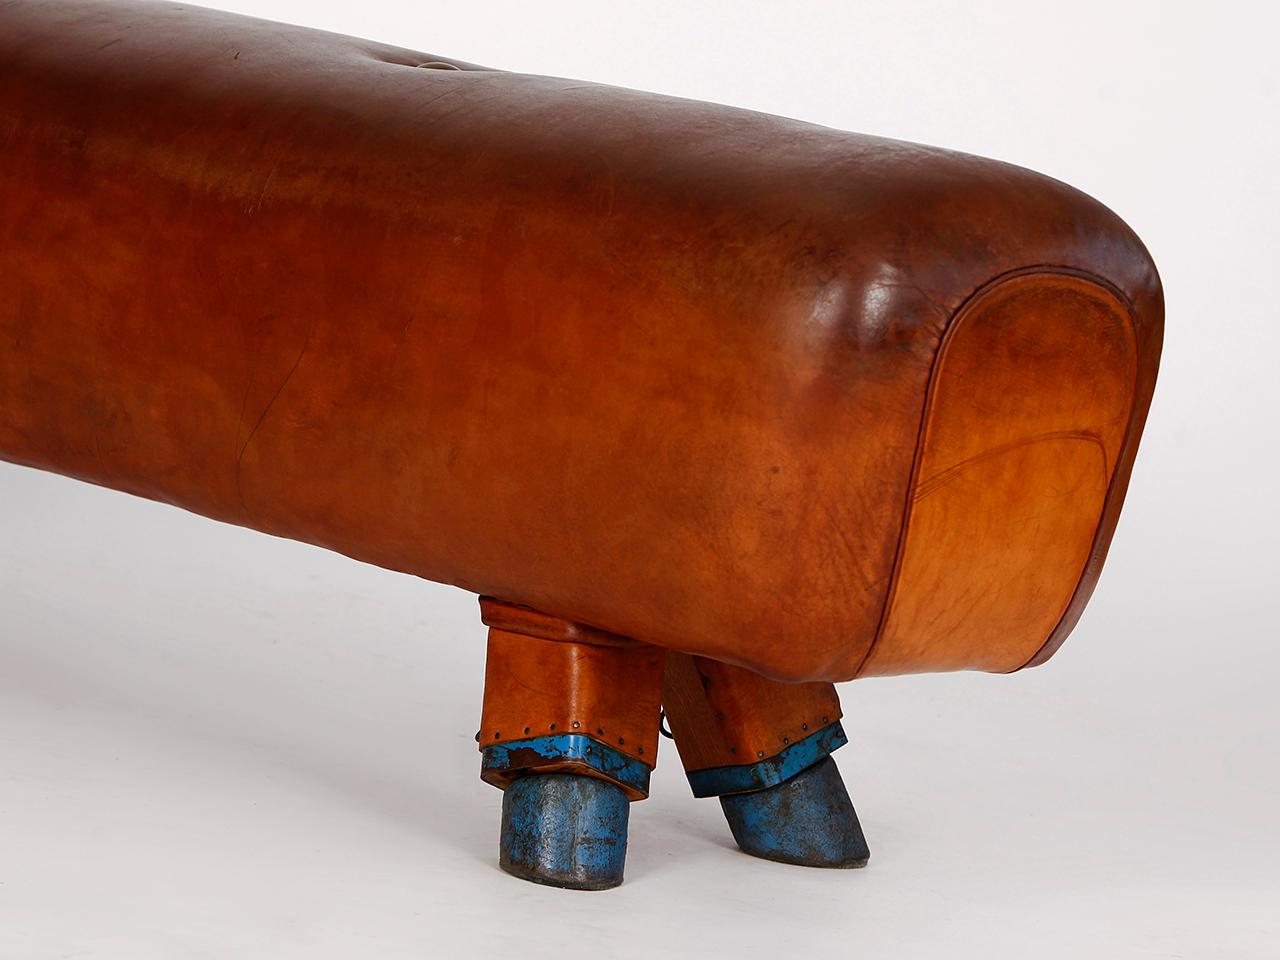 Czech Gymnastic Leather Pommel Horse Bench, 1930s